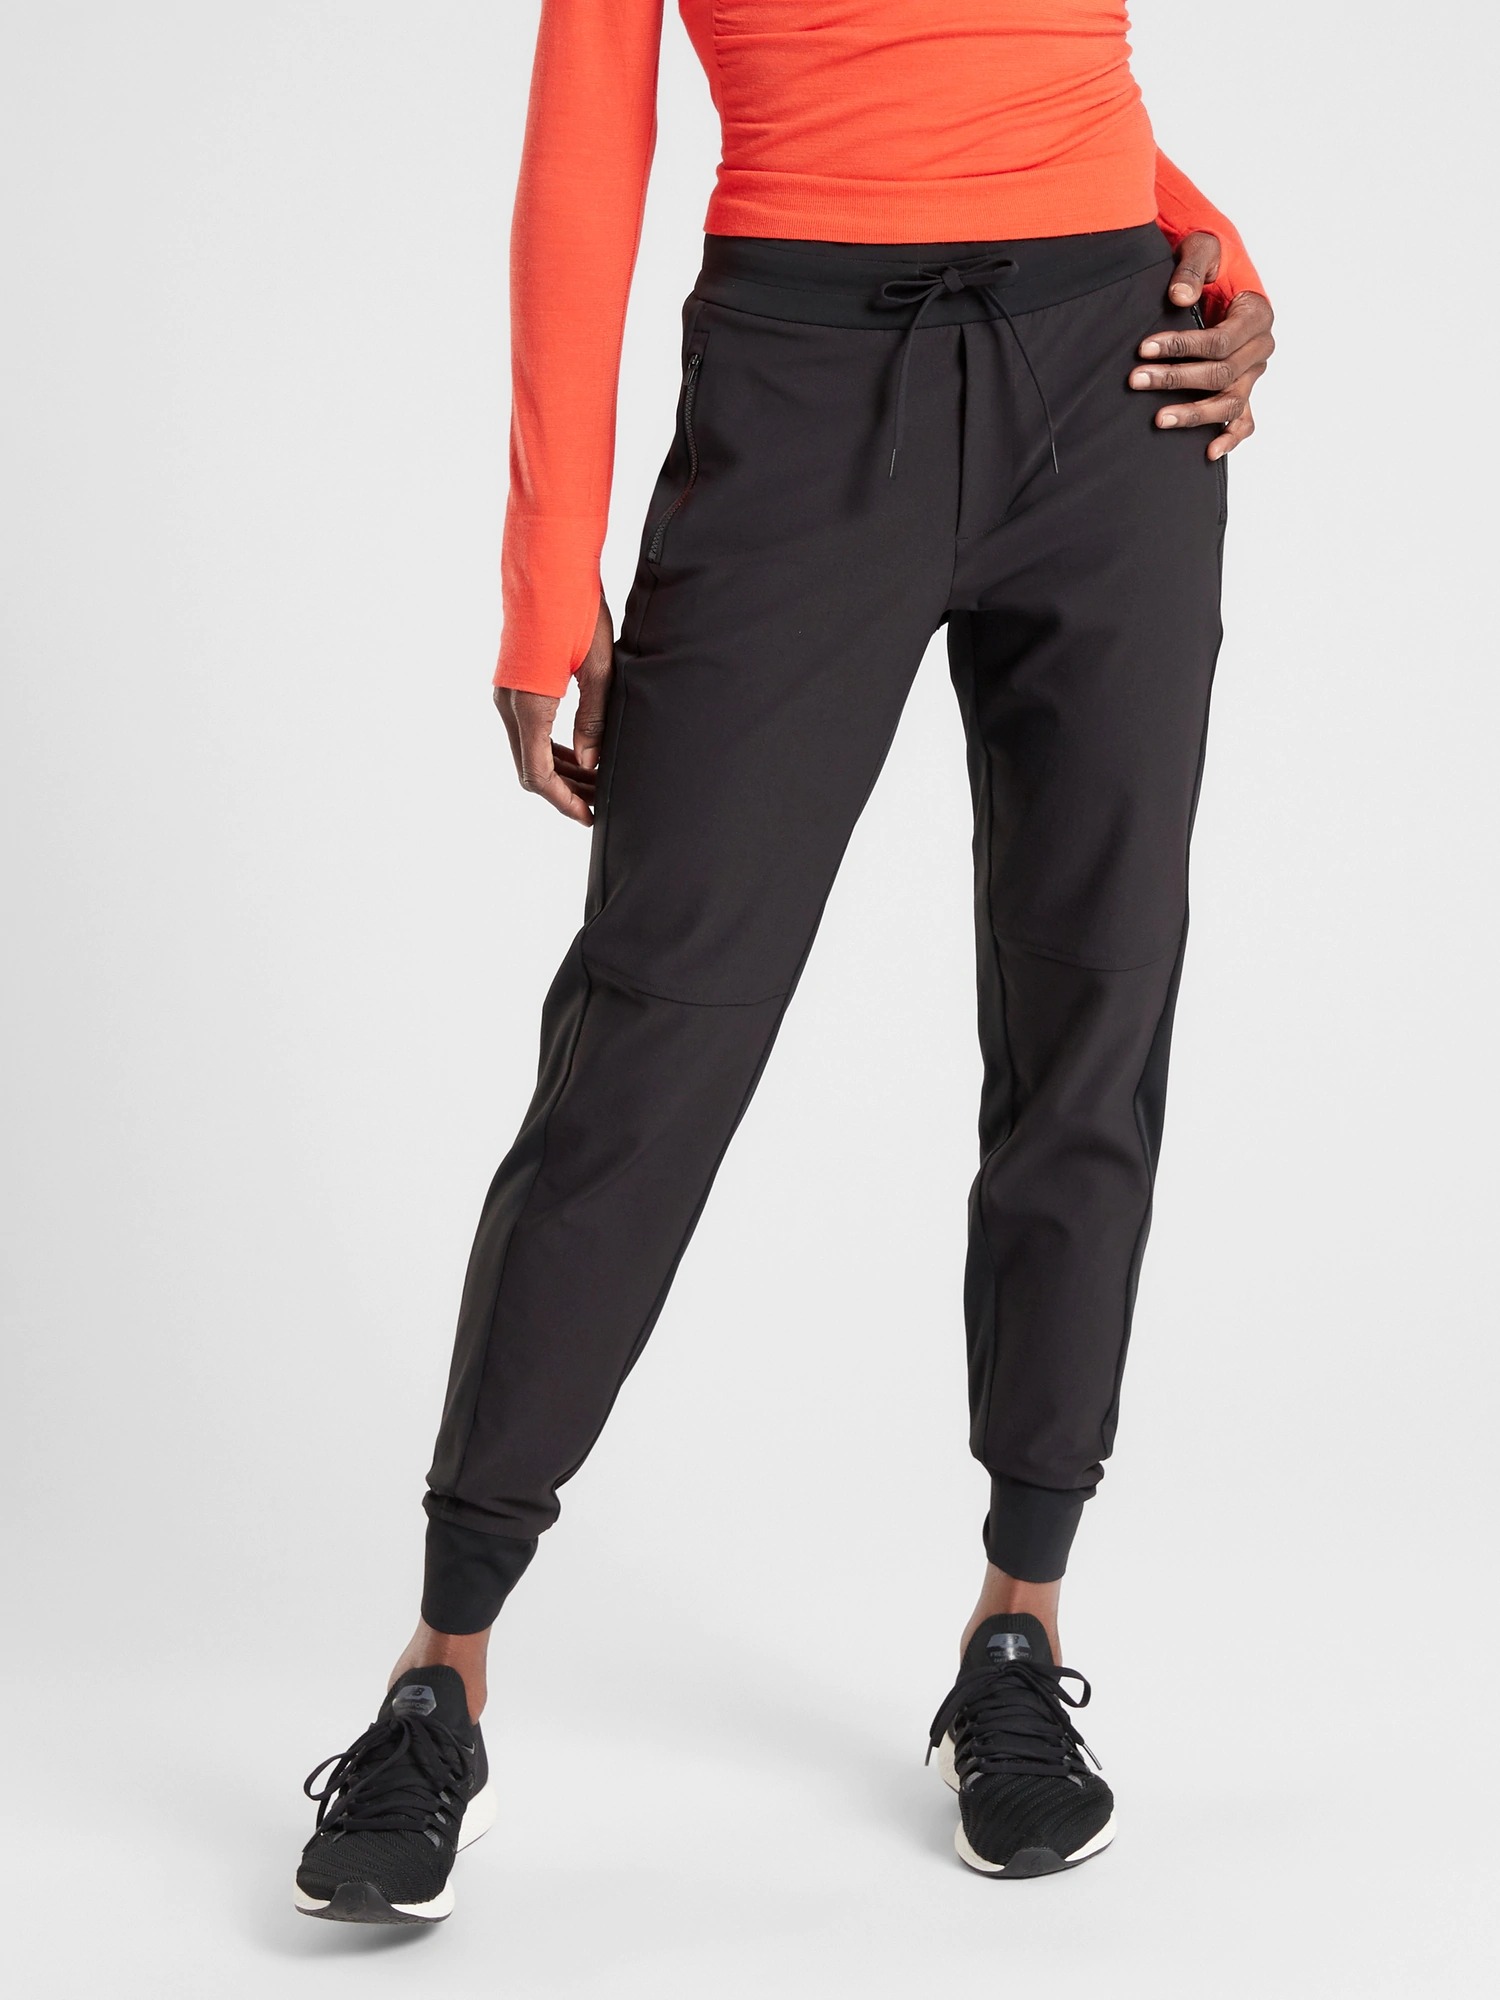 Athleta Headlands Hybrid Trek Jogger Pants Black size 2, 4, 8